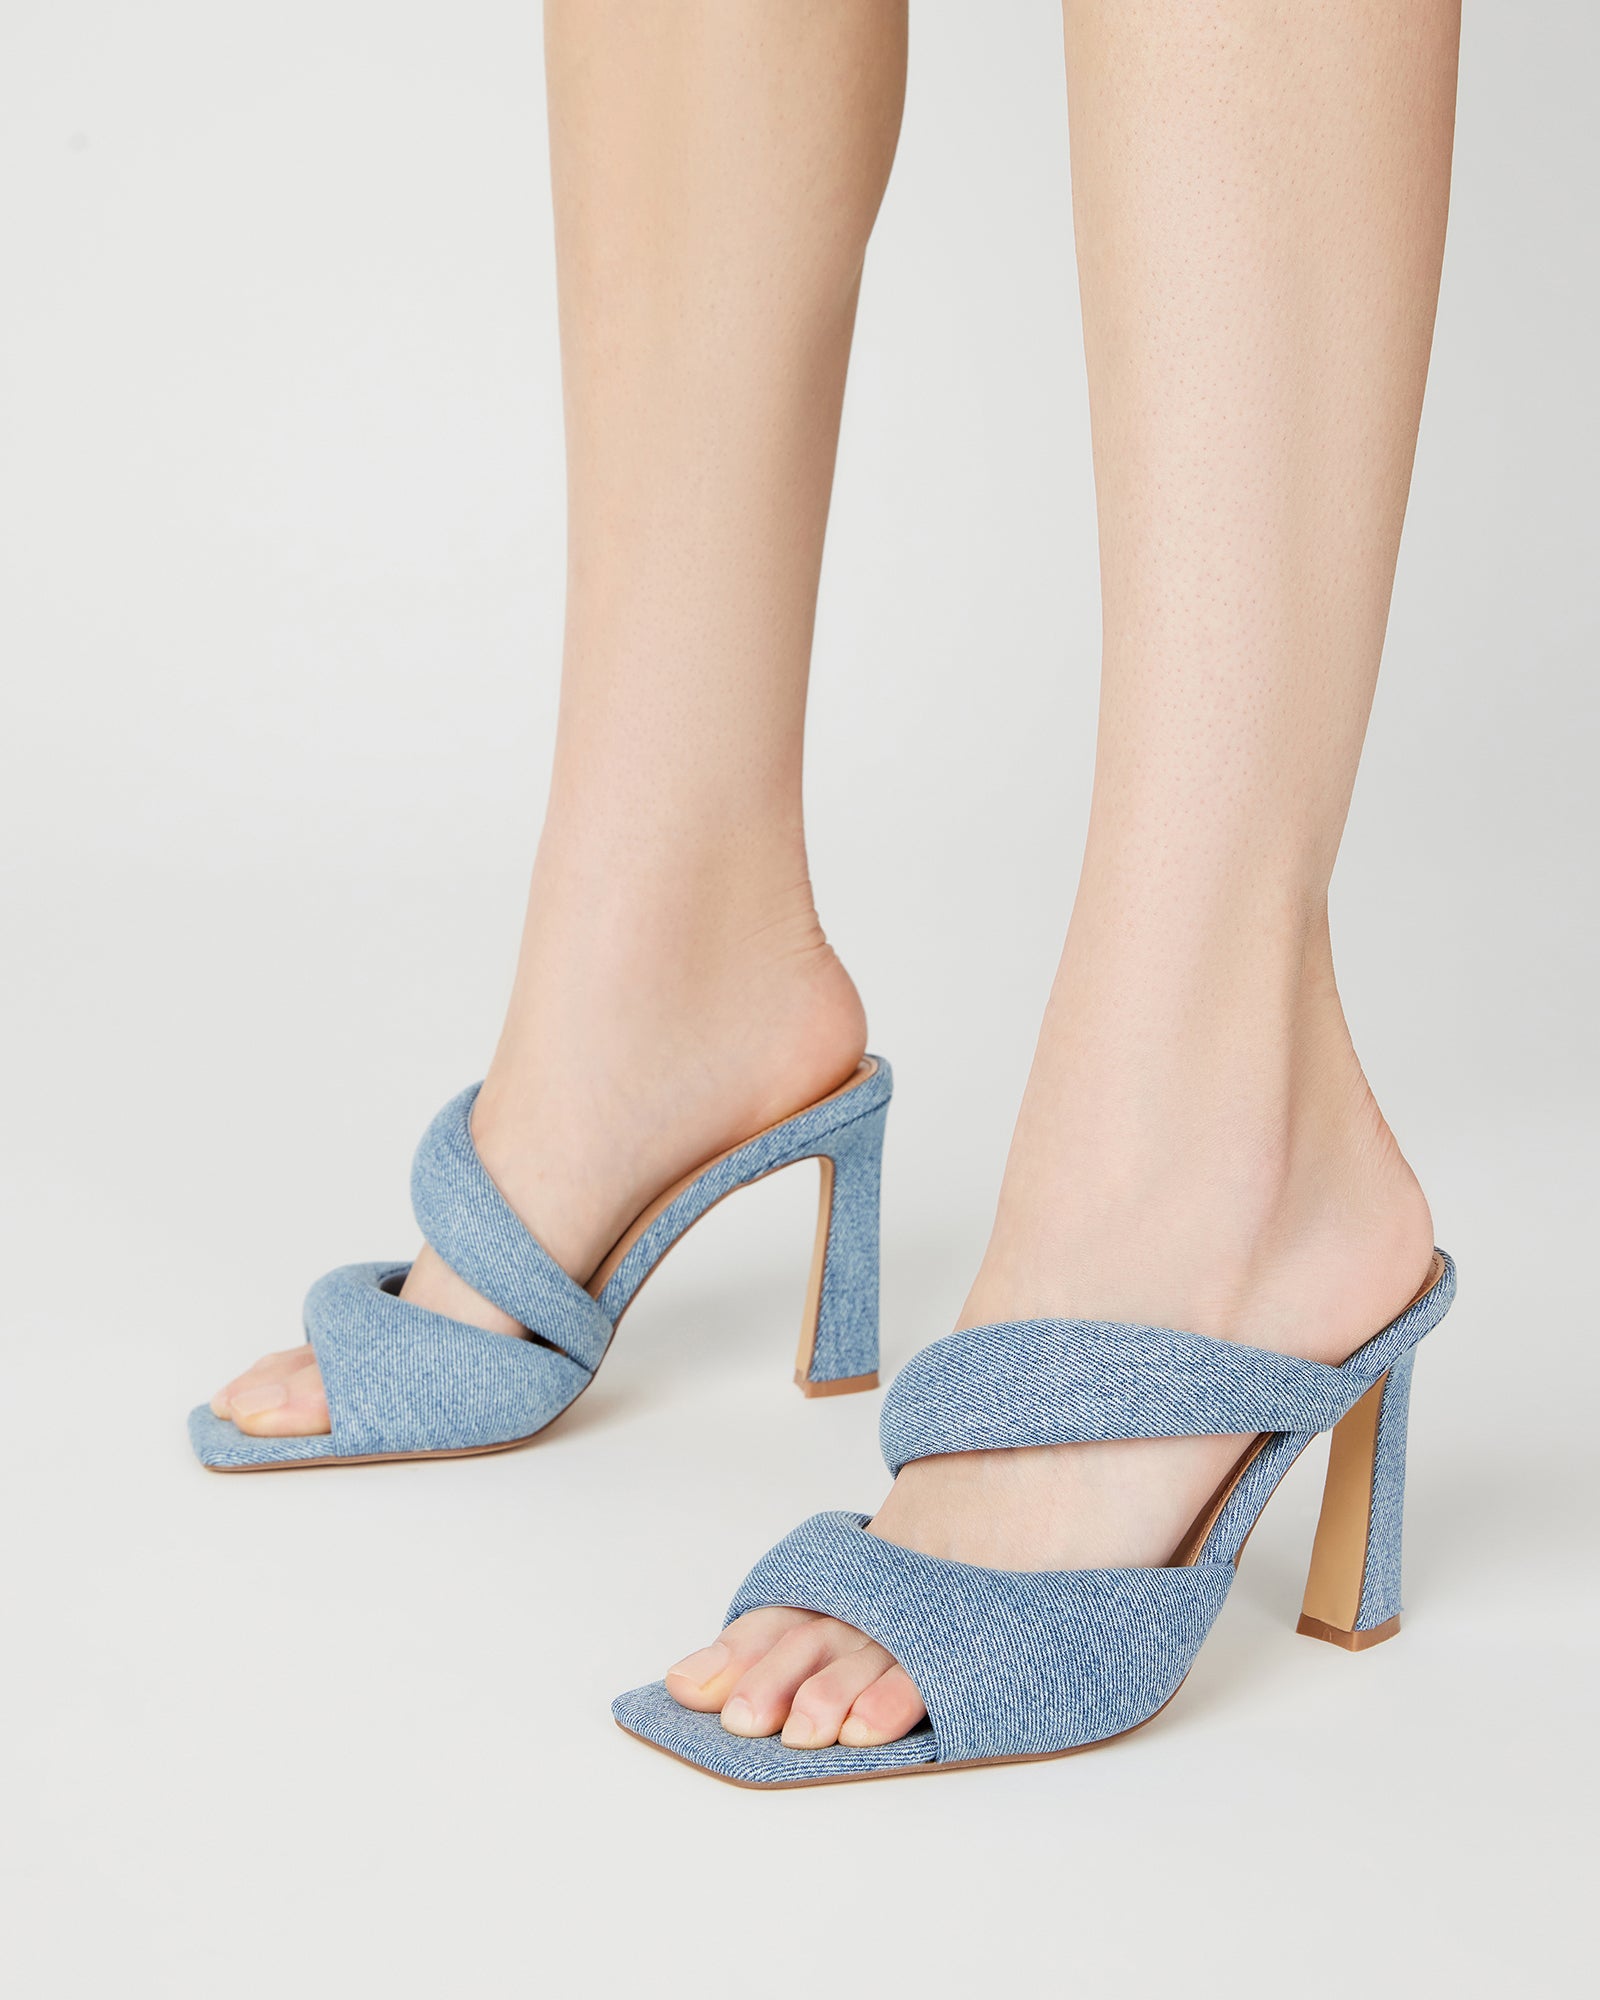 KLOSS Denim Fabric Tubular Square Toe Mule | Women's Heels – Steve Madden